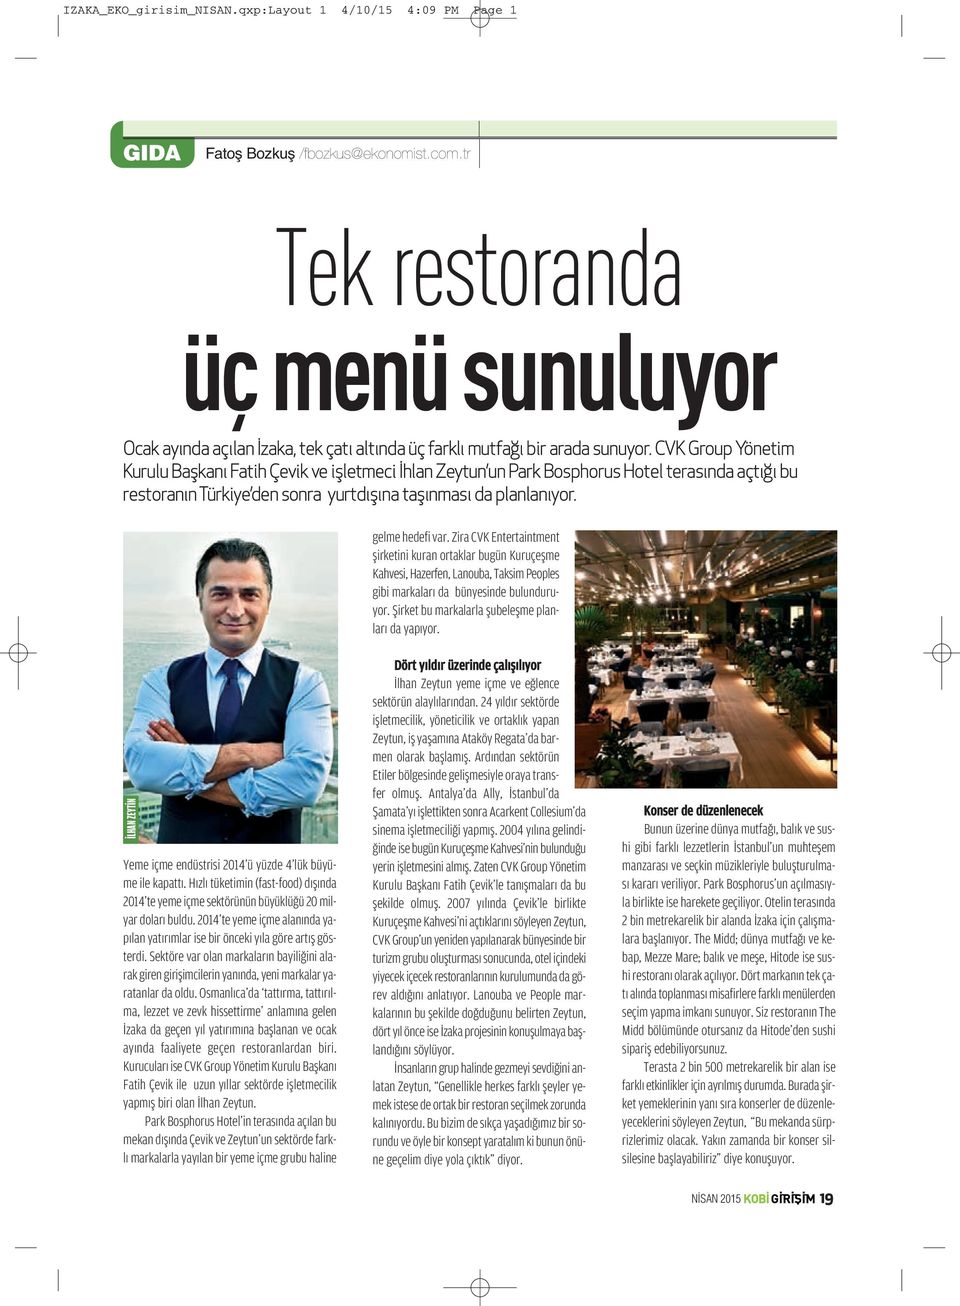 CVK Group Yönetim Kurulu Başkanı Fatih Çevik ve işletmeci İhlan Zeytun un Park Bosphorus Hotel terasında açtığı bu restoranın Türkiye den sonra yurtdışına taşınması da planlanıyor. gelme hedefi var.